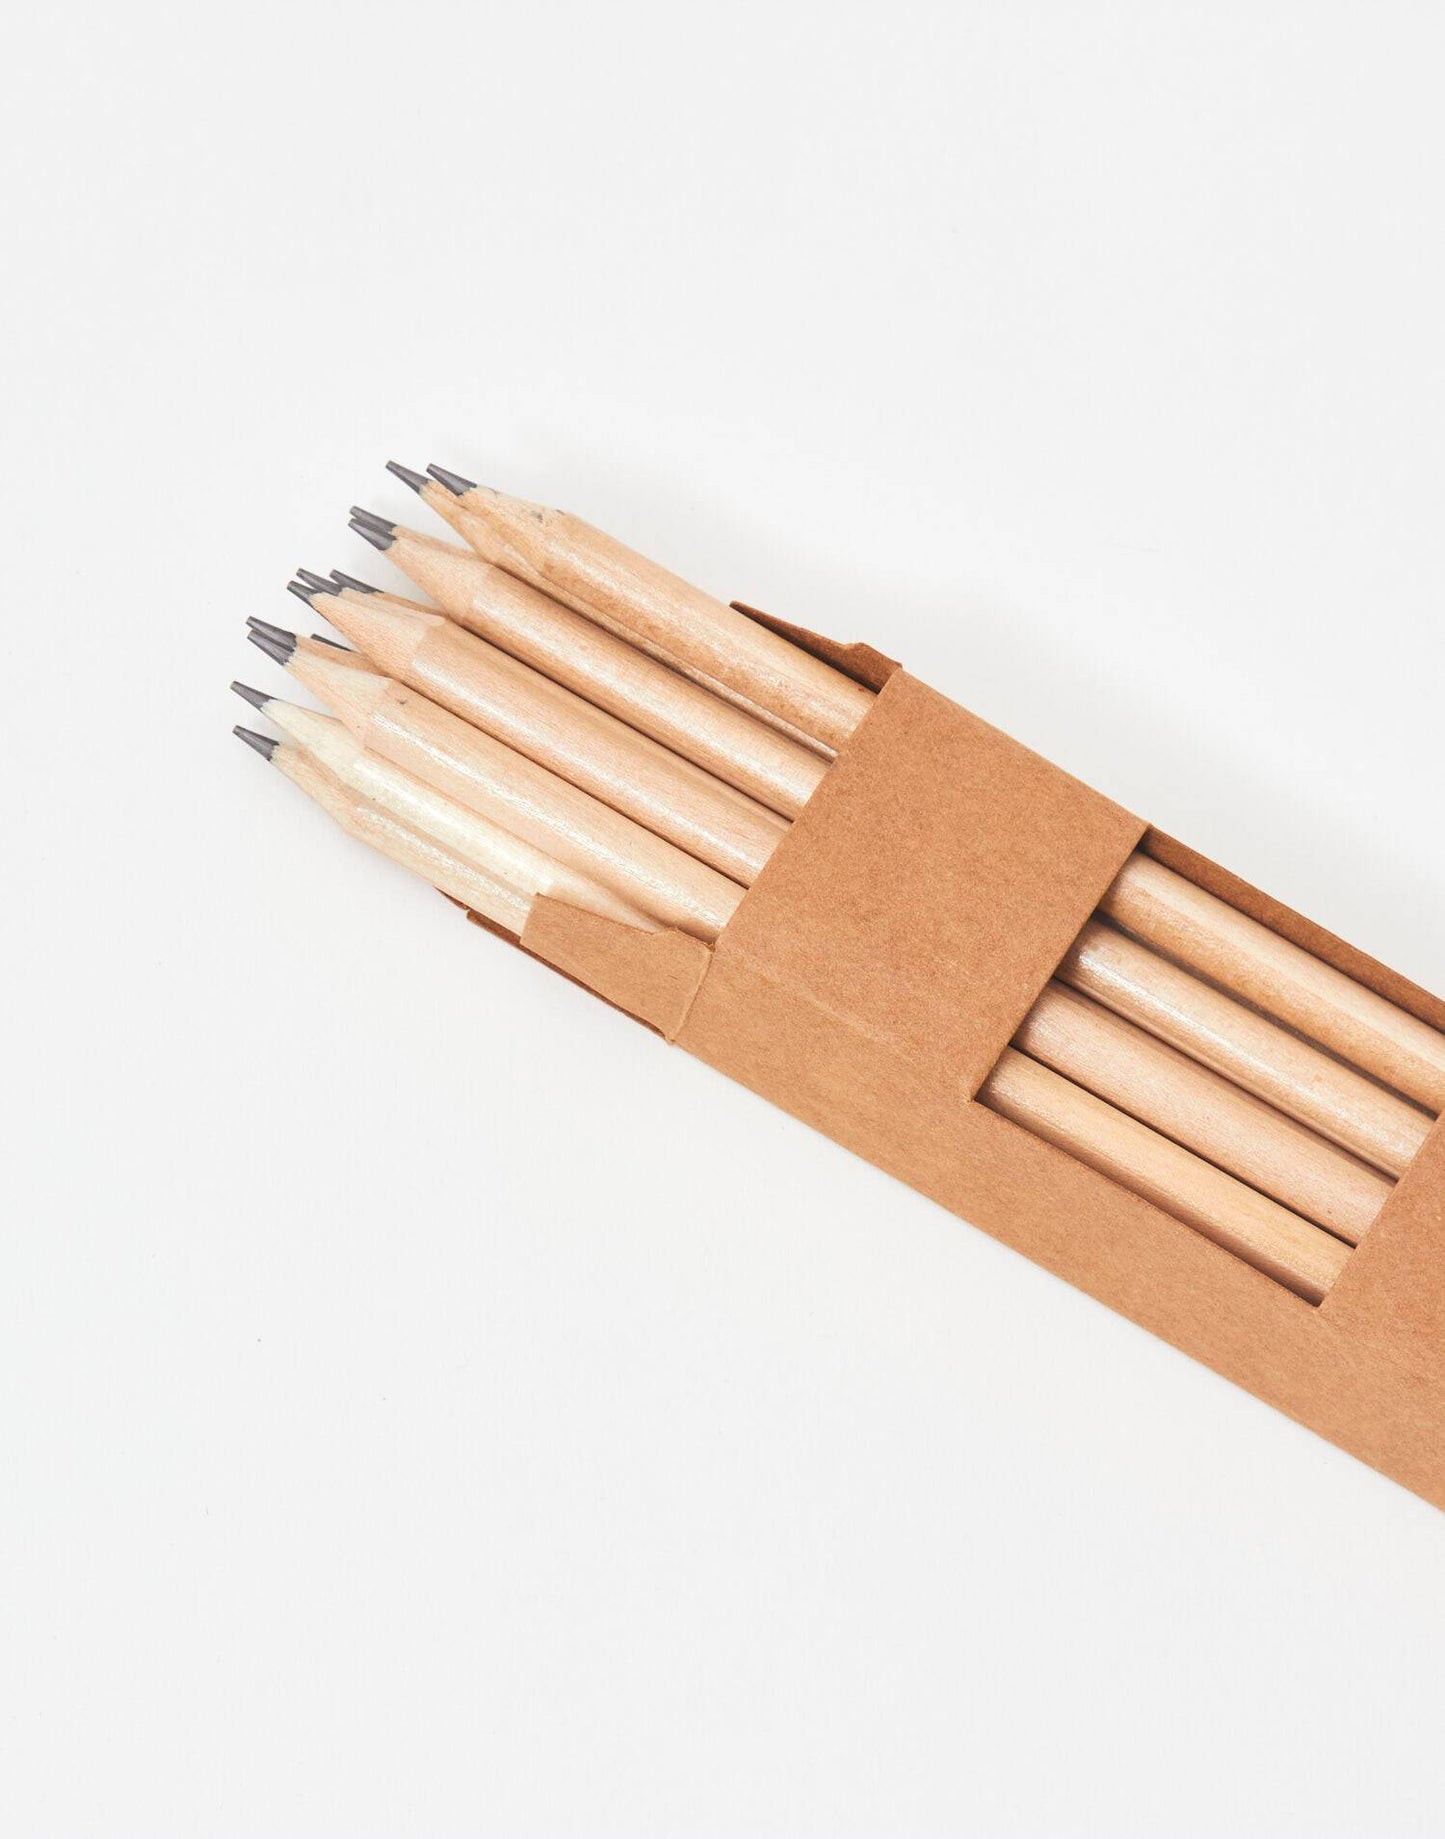 Set of 12 HB pencils